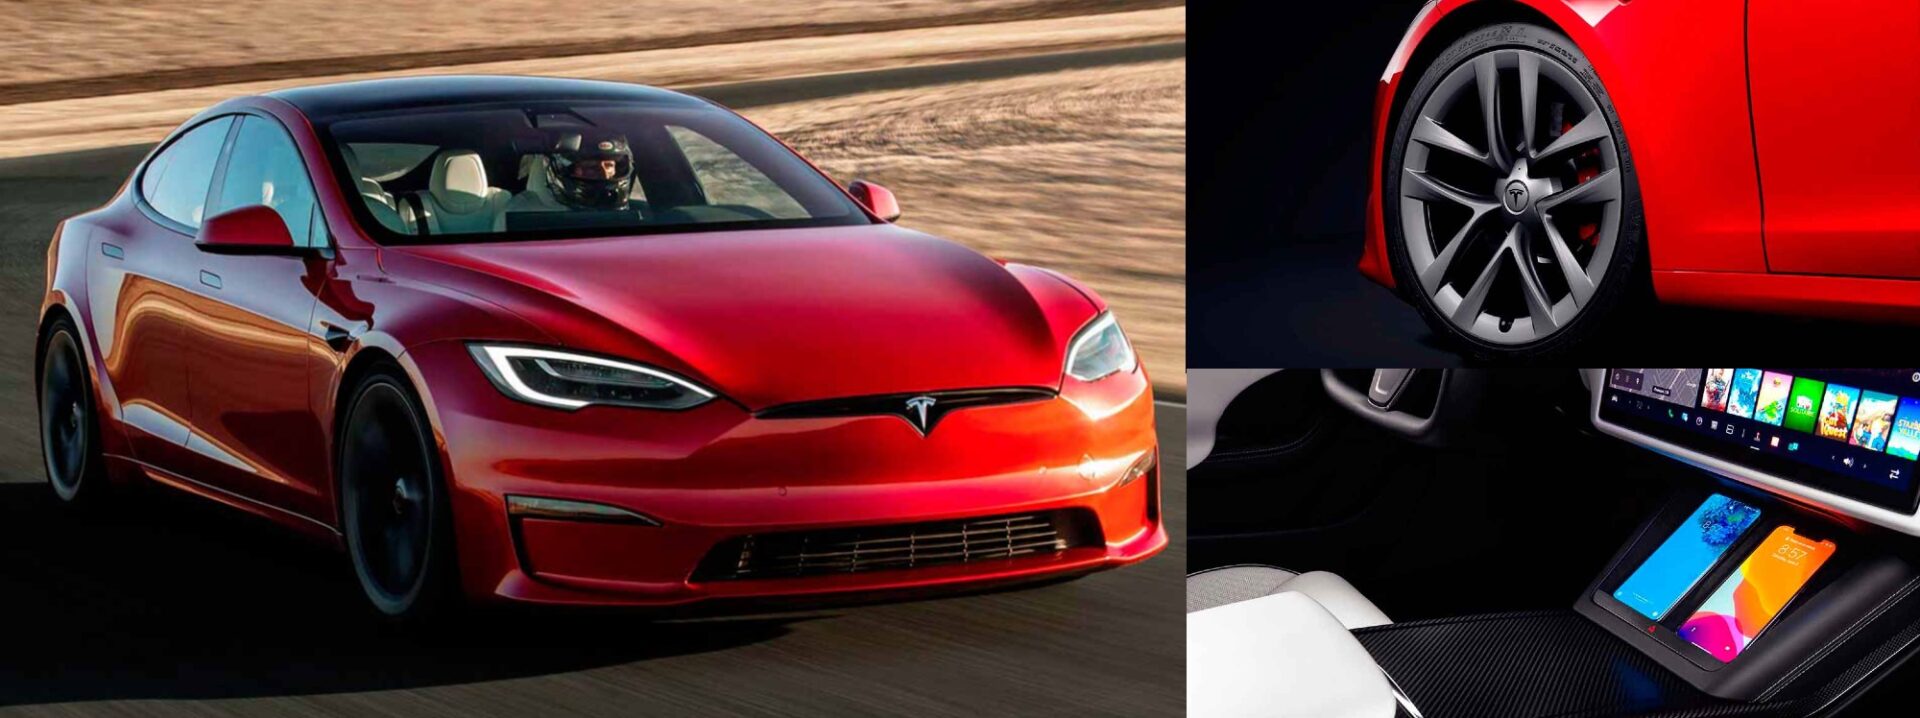 Así es el nuevo deportivo de Elon Musk: el Tesla Model S Plaid